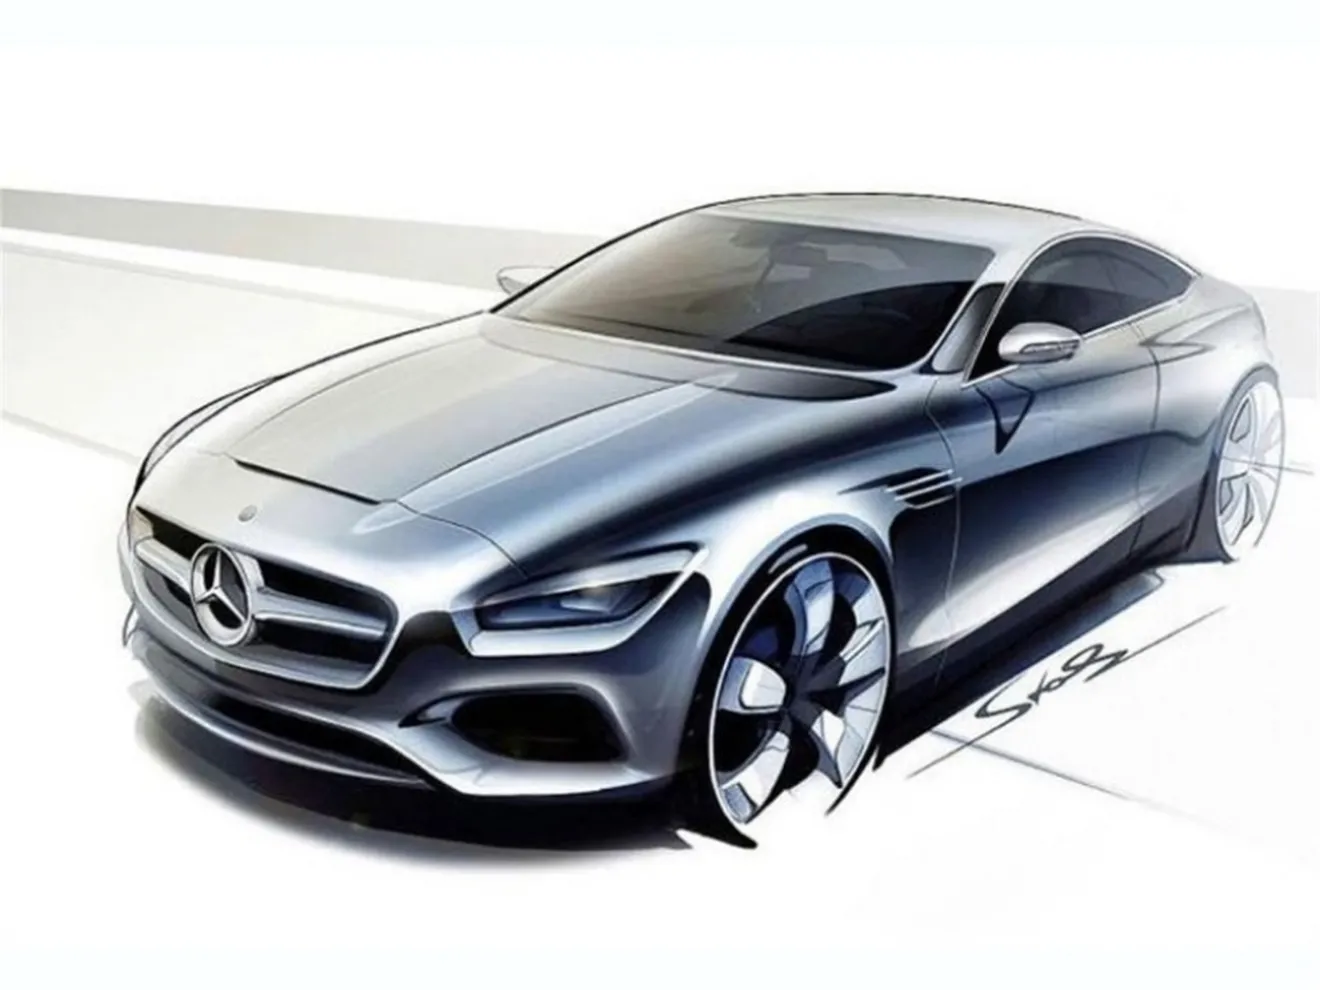 Mercedes-Benz Clase S Coupé, el lujoso deportivo estará en Frankfurt